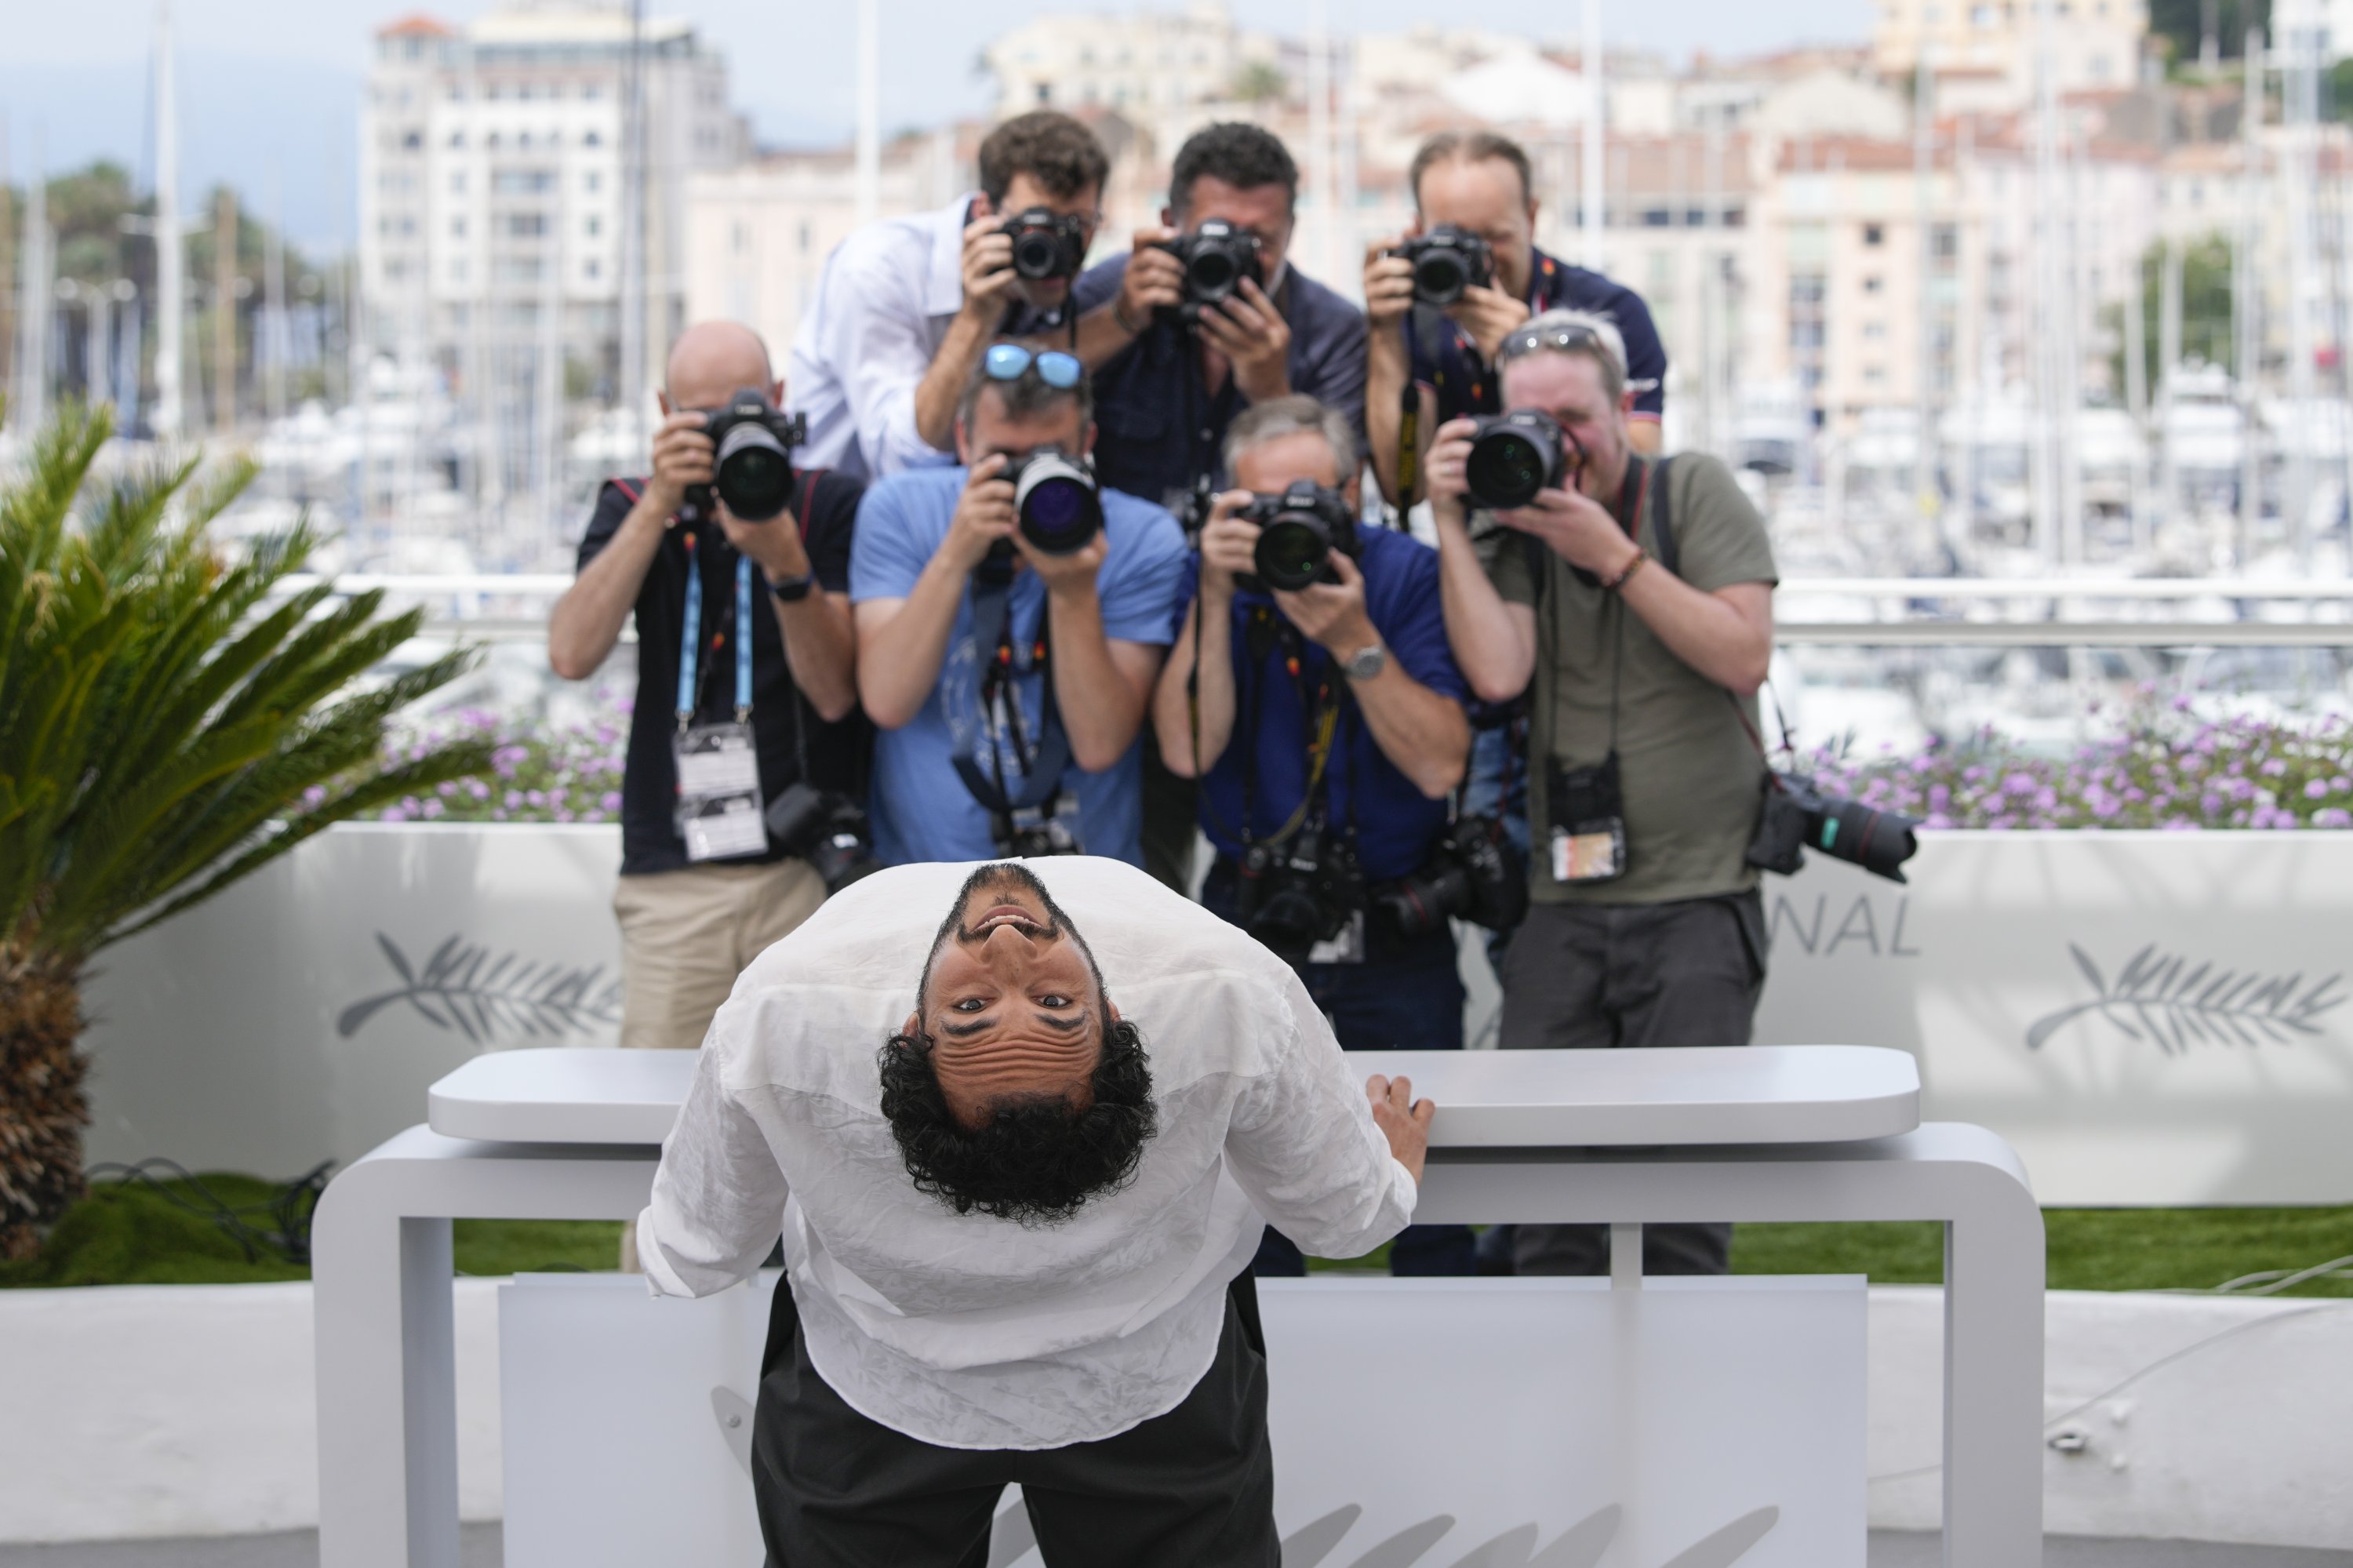 Sutradara Ali Abbasi berpose untuk fotografer pada sesi pemotretan untuk film 'Holy Spider' di festival film internasional ke-75, Cannes, Prancis selatan, 23 Mei 2022. (AP Photo)